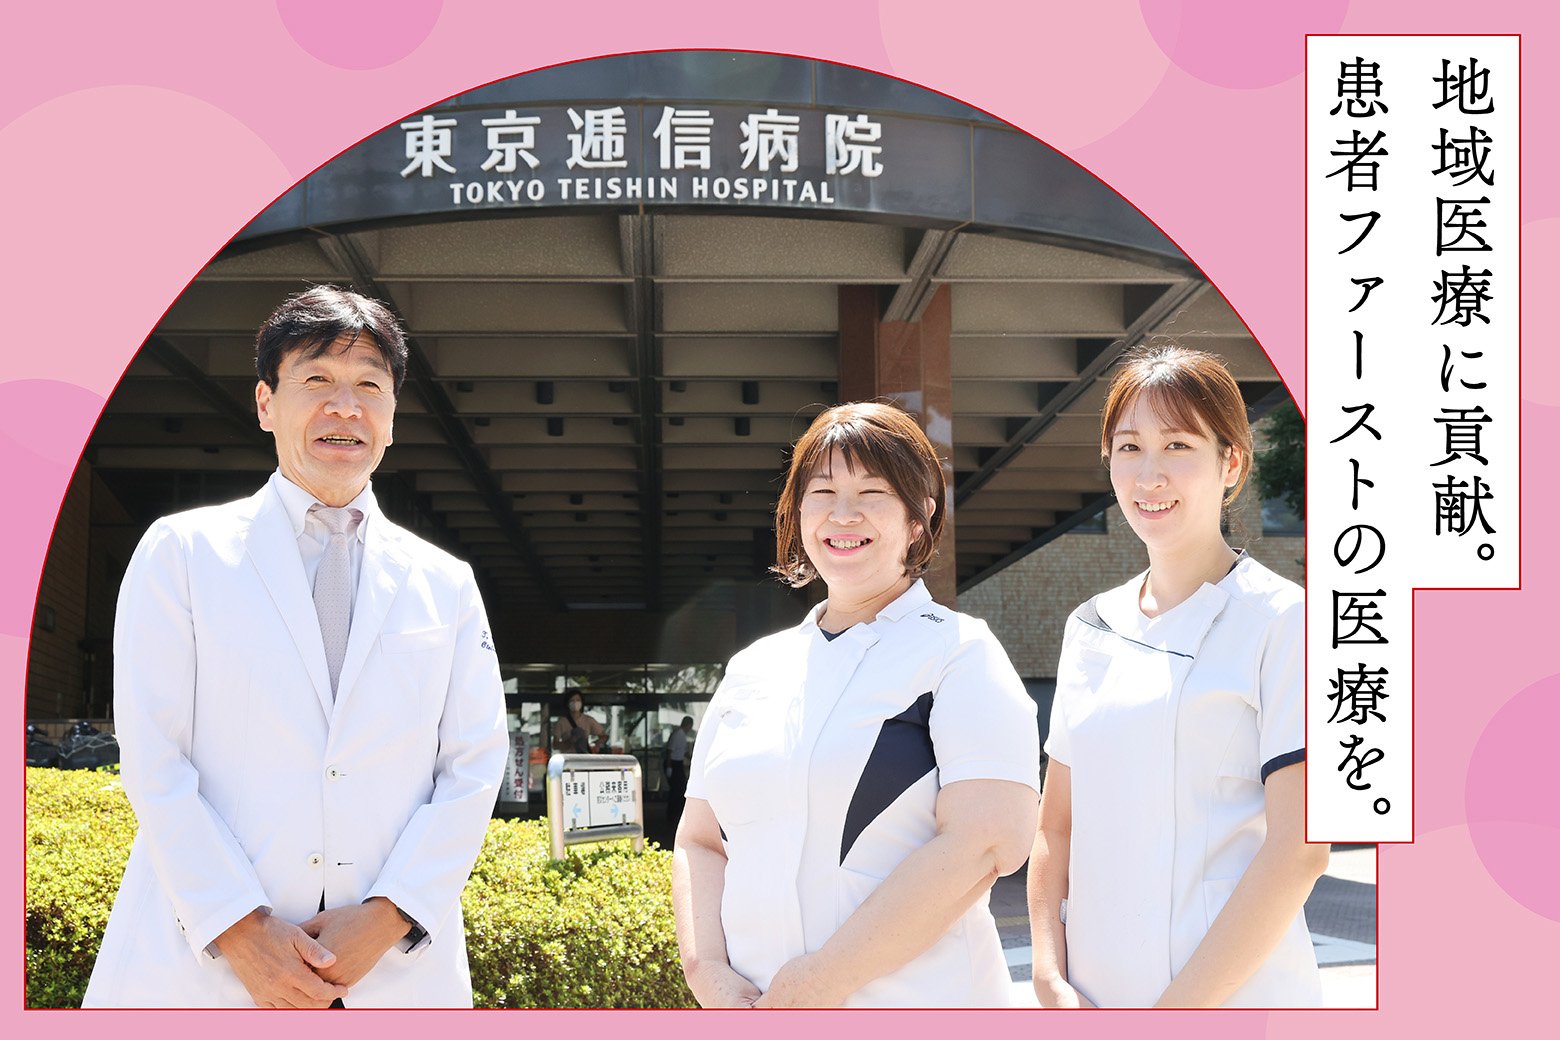 地域医療を担う東京逓信病院の取り組みと、がんケアの現場で大切なこと